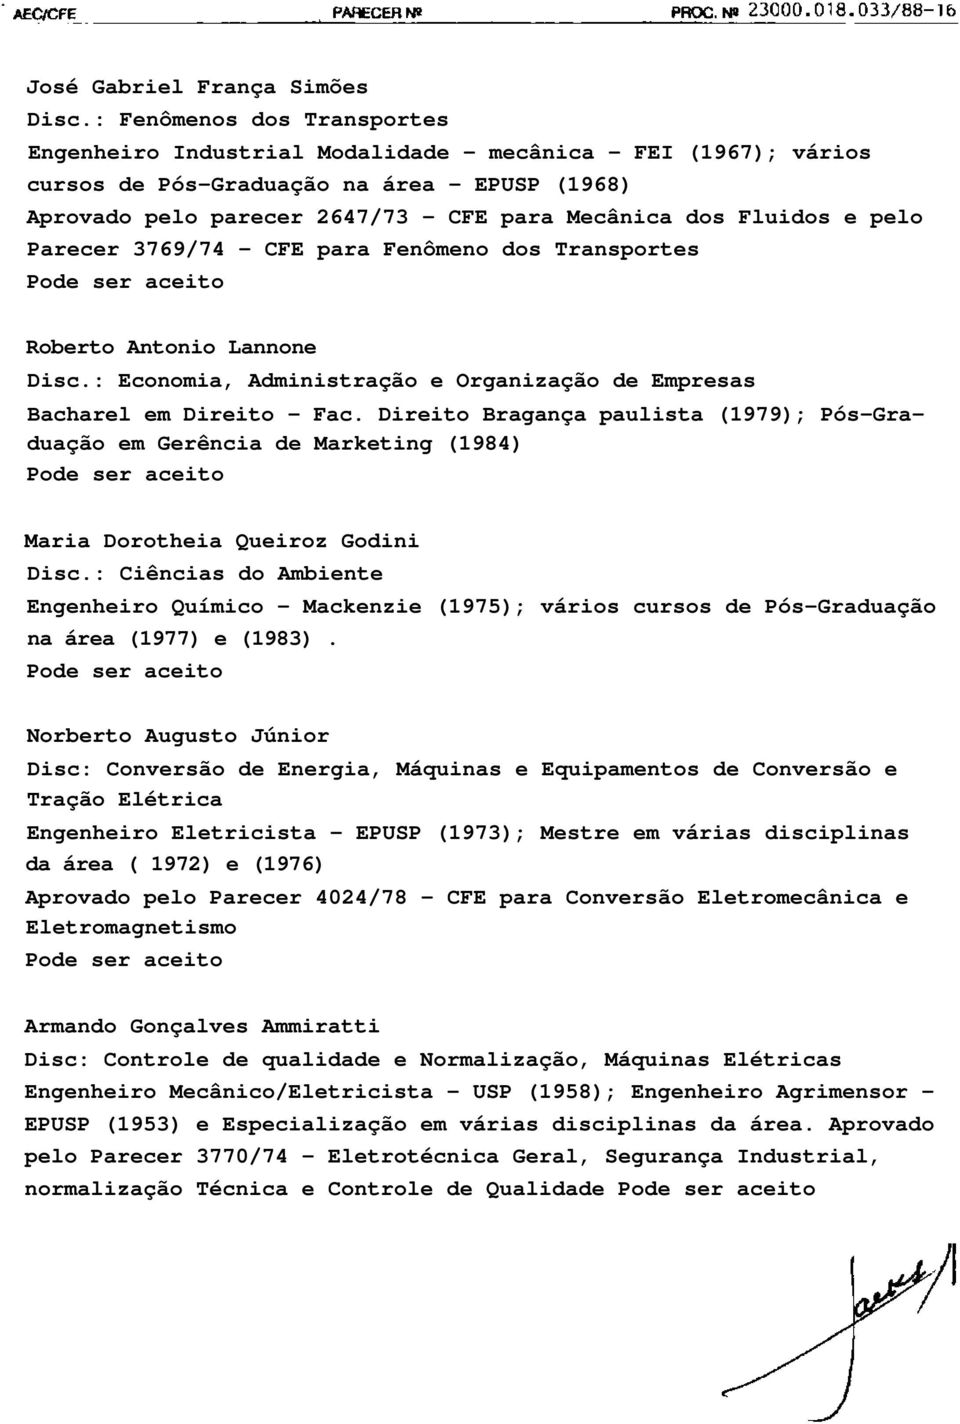 Fluidos e pelo Parecer 3769/74 - CFE para Fenômeno dos Transportes Roberto Antonio Lannone Disc.: Economia, Administração e Organização de Empresas Bacharel em Direito - Fac.